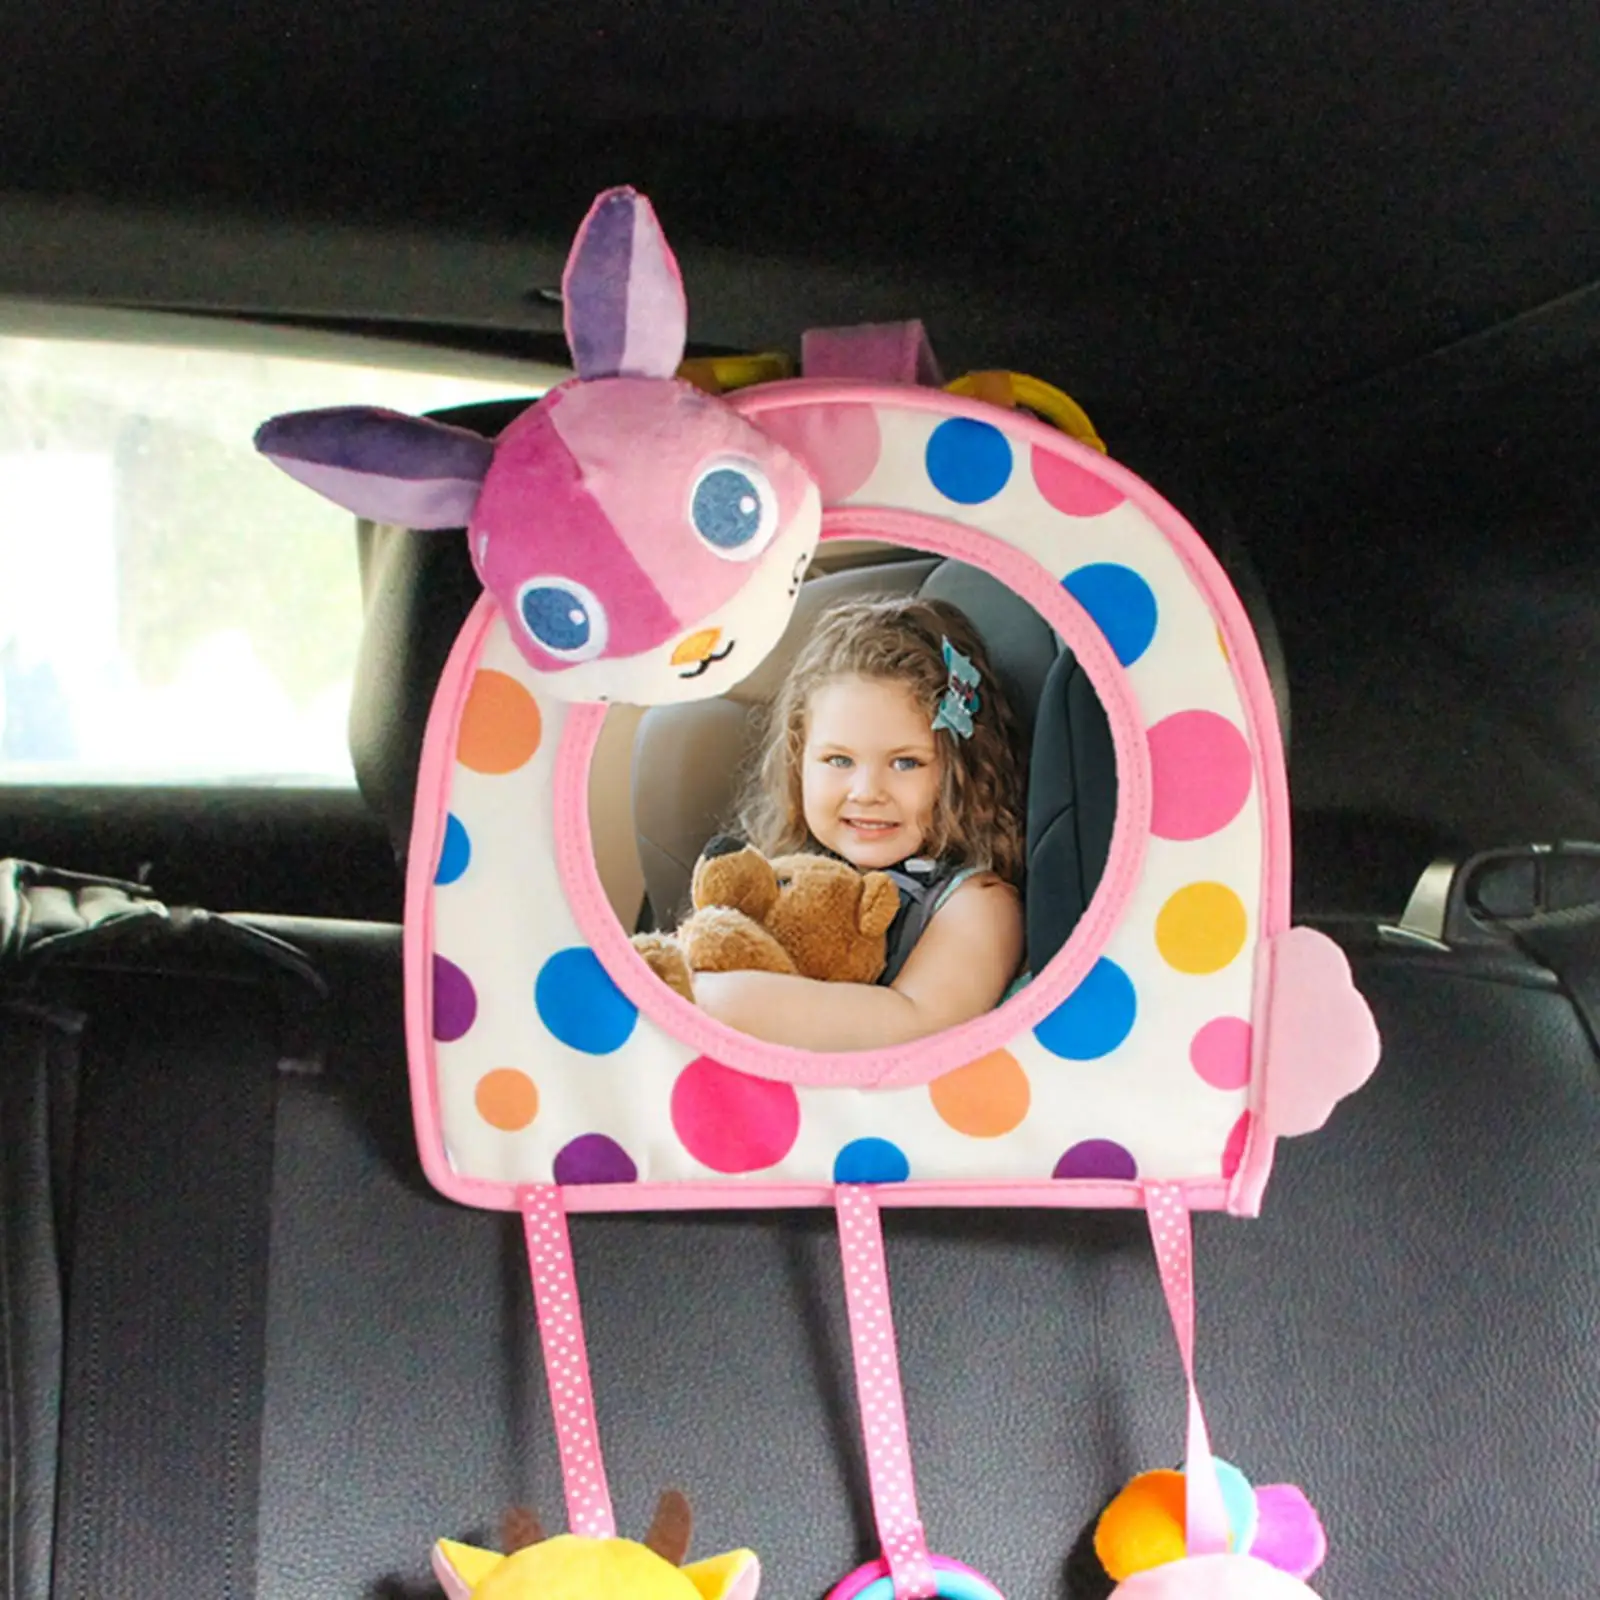 Cute Baby Car Mirror Car Accessories Car Seat Back View Mirror for Newborn